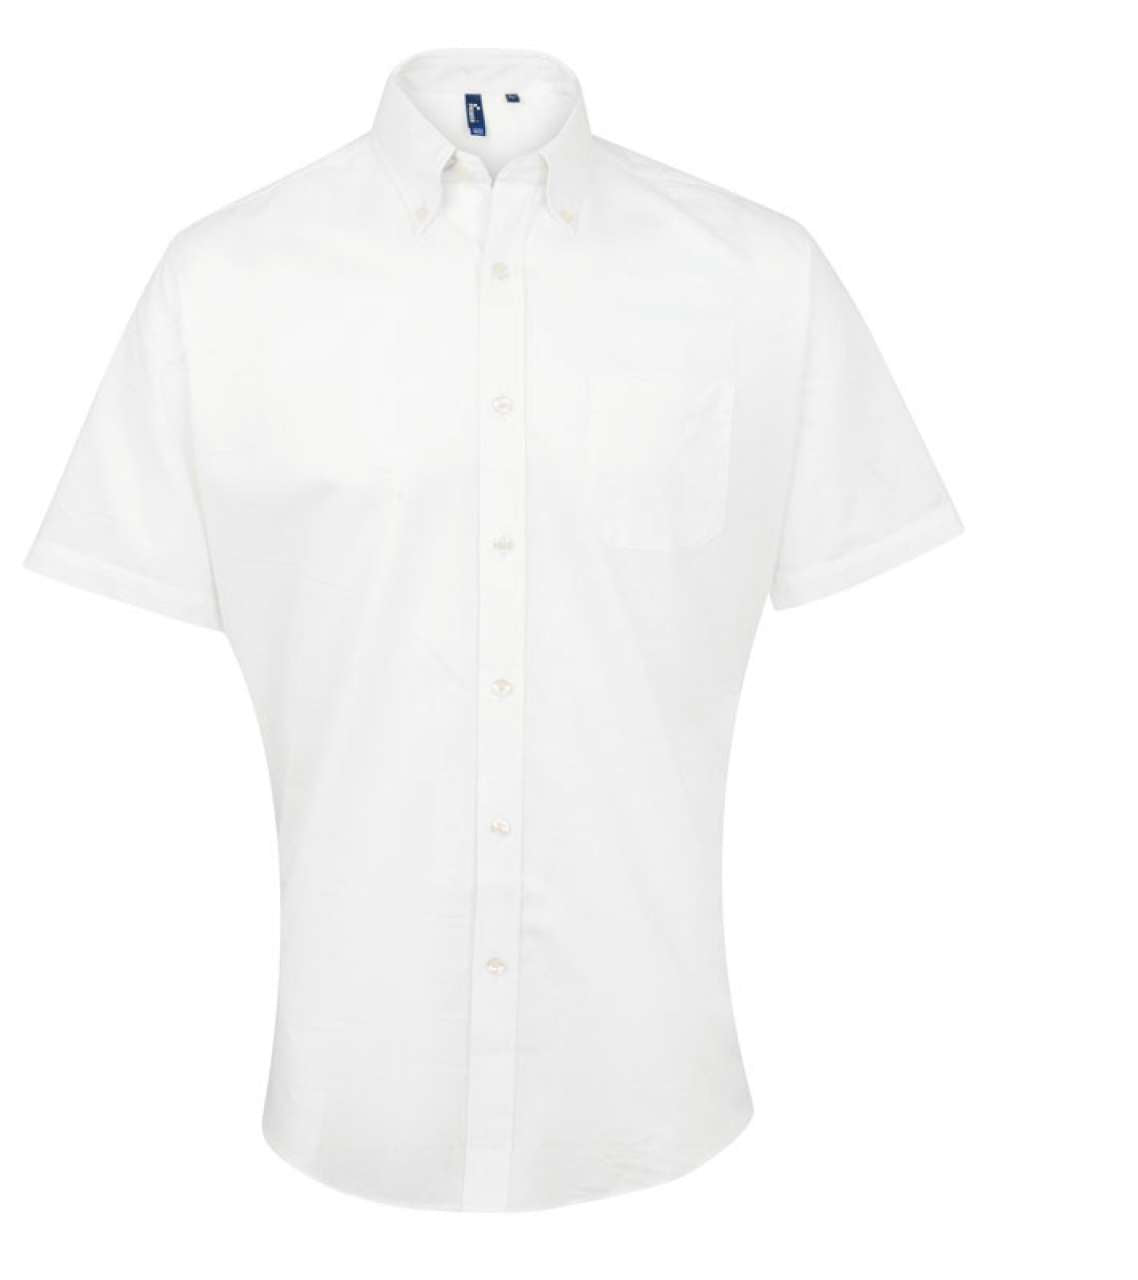 Premier Herren Hemd Kurzarm Oxford Shirt Kragen Freizeithemd Business